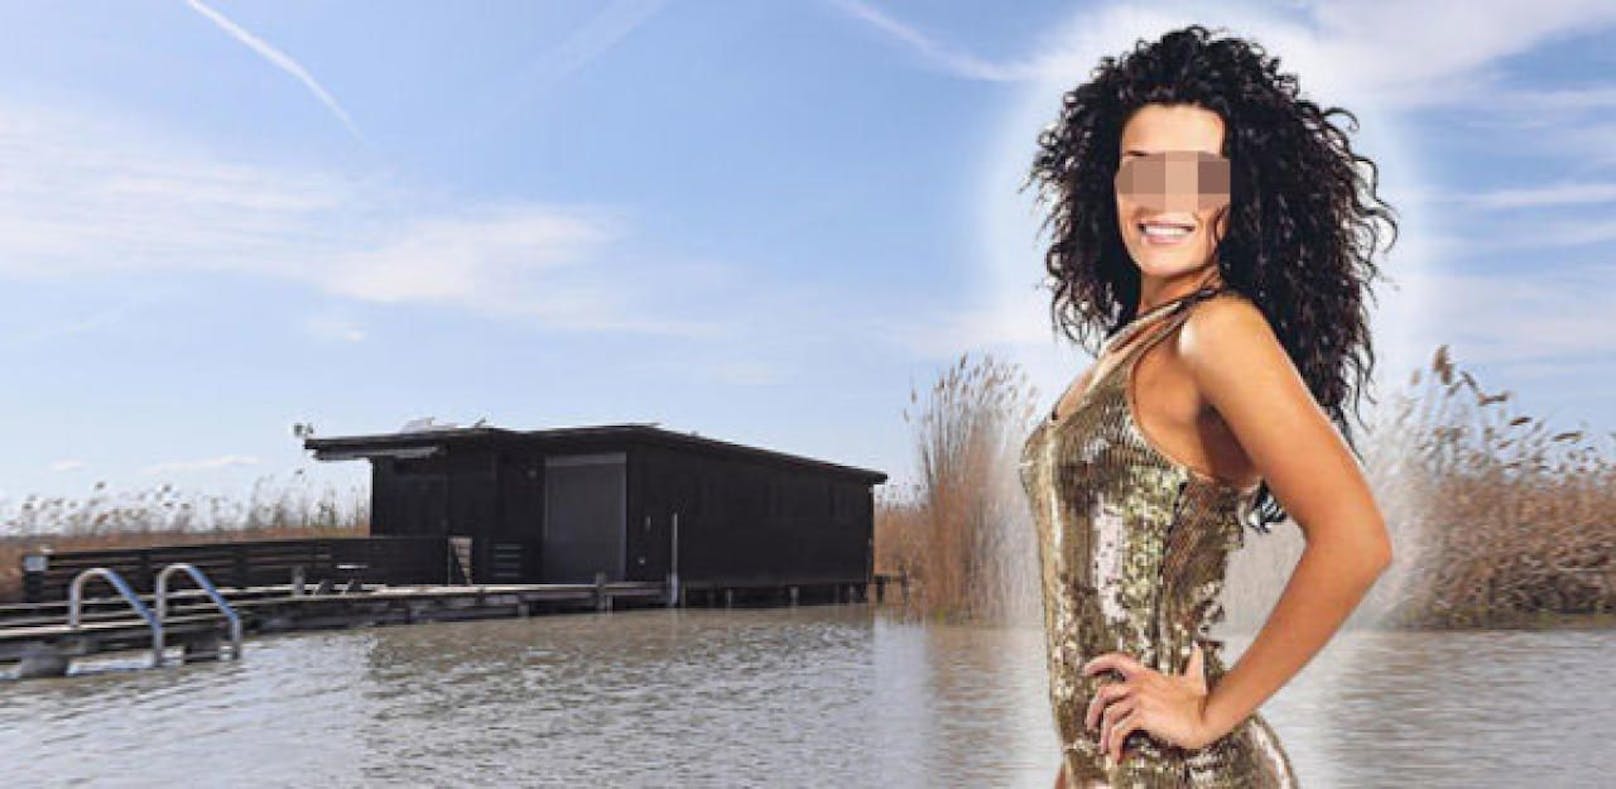 Trauriger Verdacht: Ist das vermisste TV-Starlet Fanni (24) die Tote aus dem Neusiedler See?